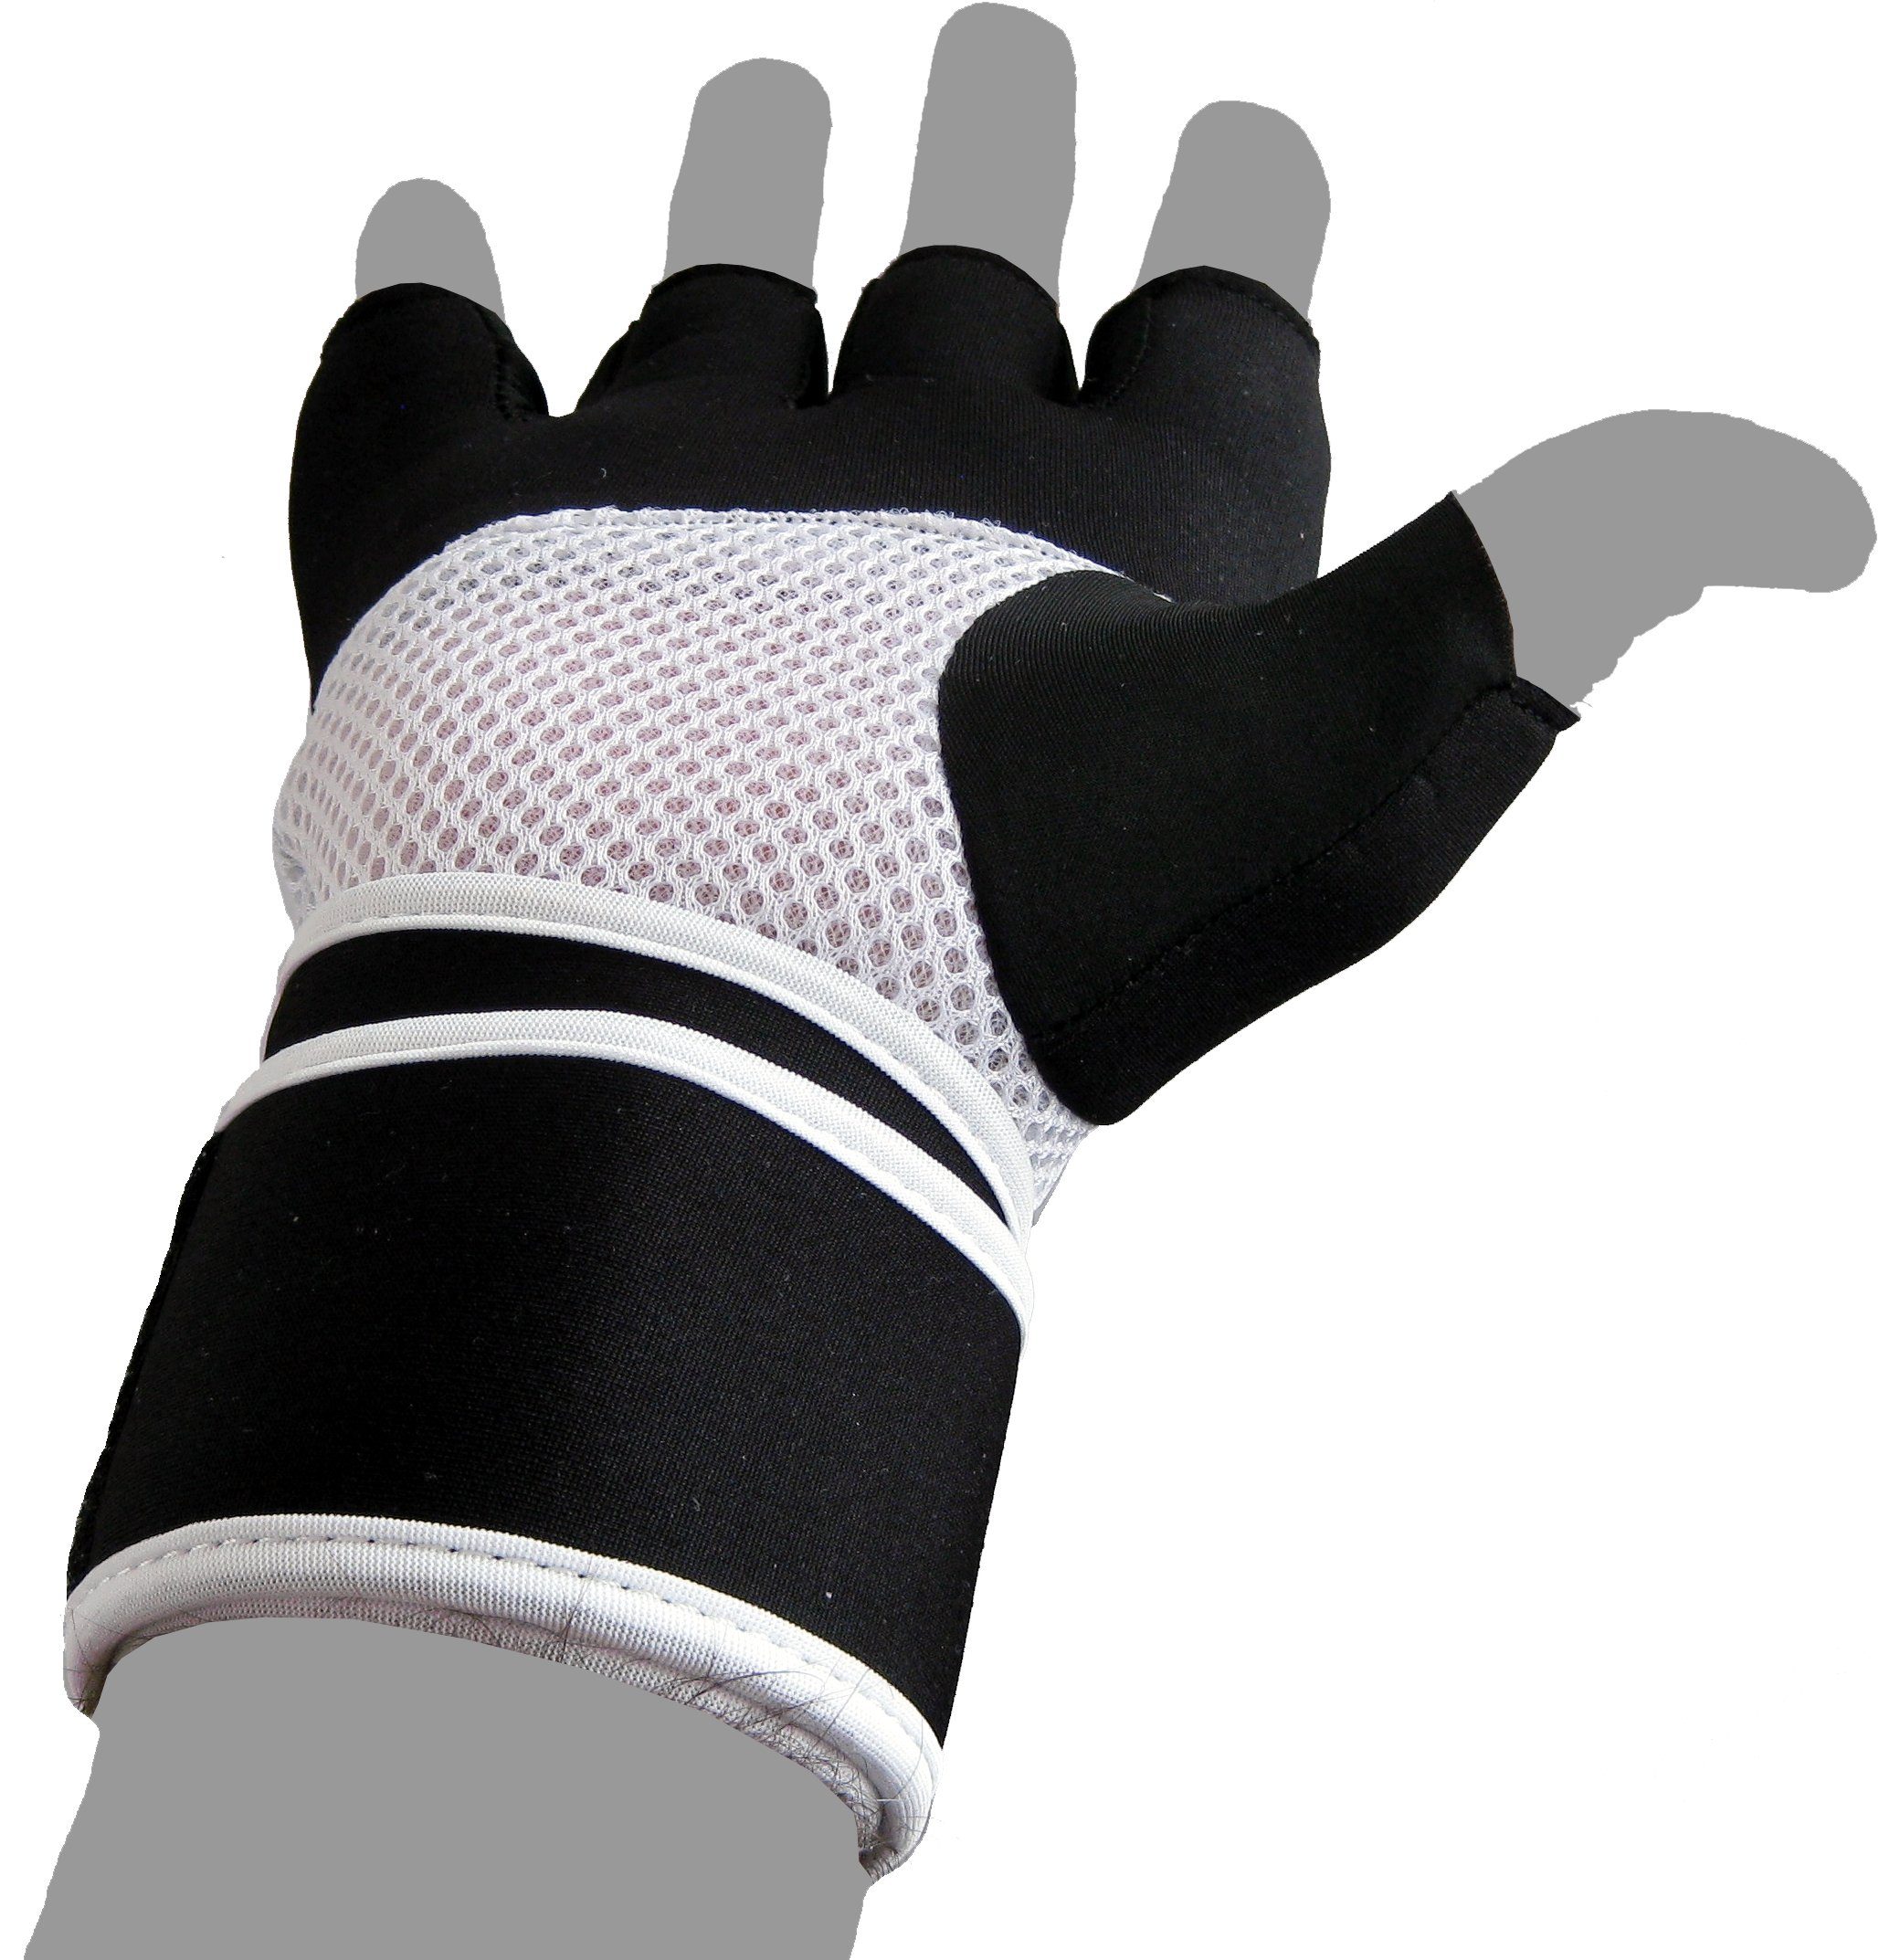 BAY-Sports Boxhandschuhe Winsome Handschutz Handschuhe Kinder - Boxsack und XL XS Erwachsene Sandsack, Neopren